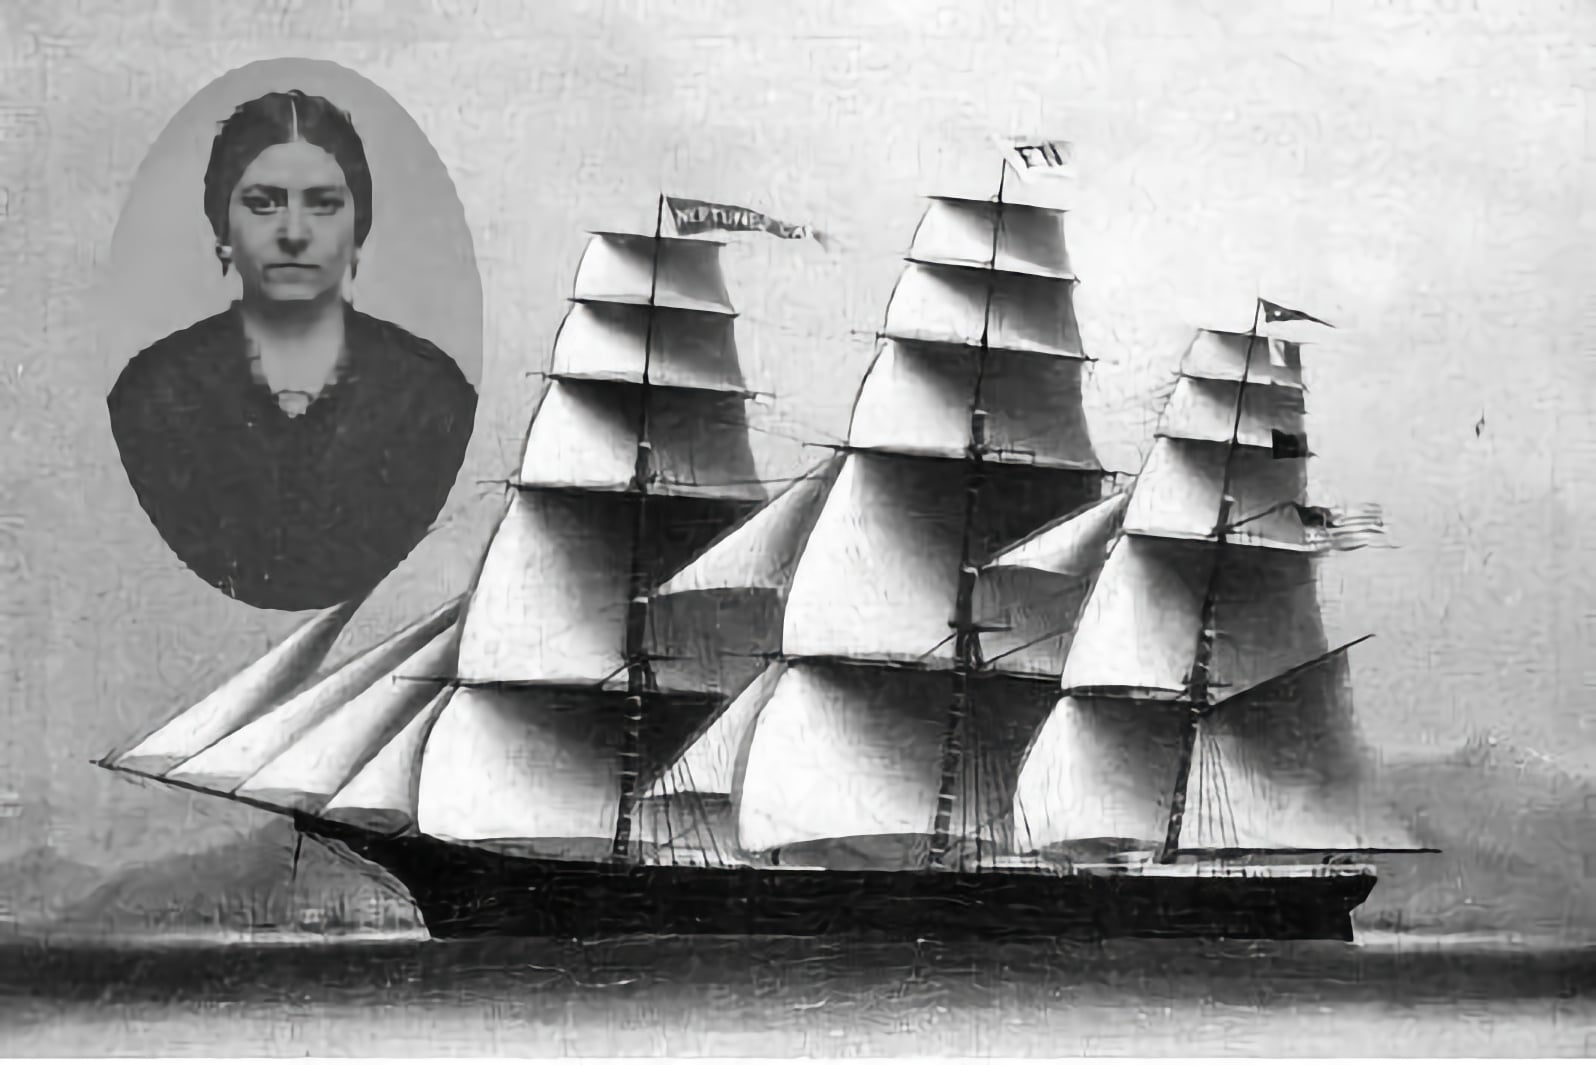 ‘แมรี่ แพตแทน’ กัปตันเรือสินค้าหญิงคนแรกในประวัติศาสตร์อเมริกันวัย 19 ปี และตั้งครรภ์ระหว่างปฏิบัติหน้าที่